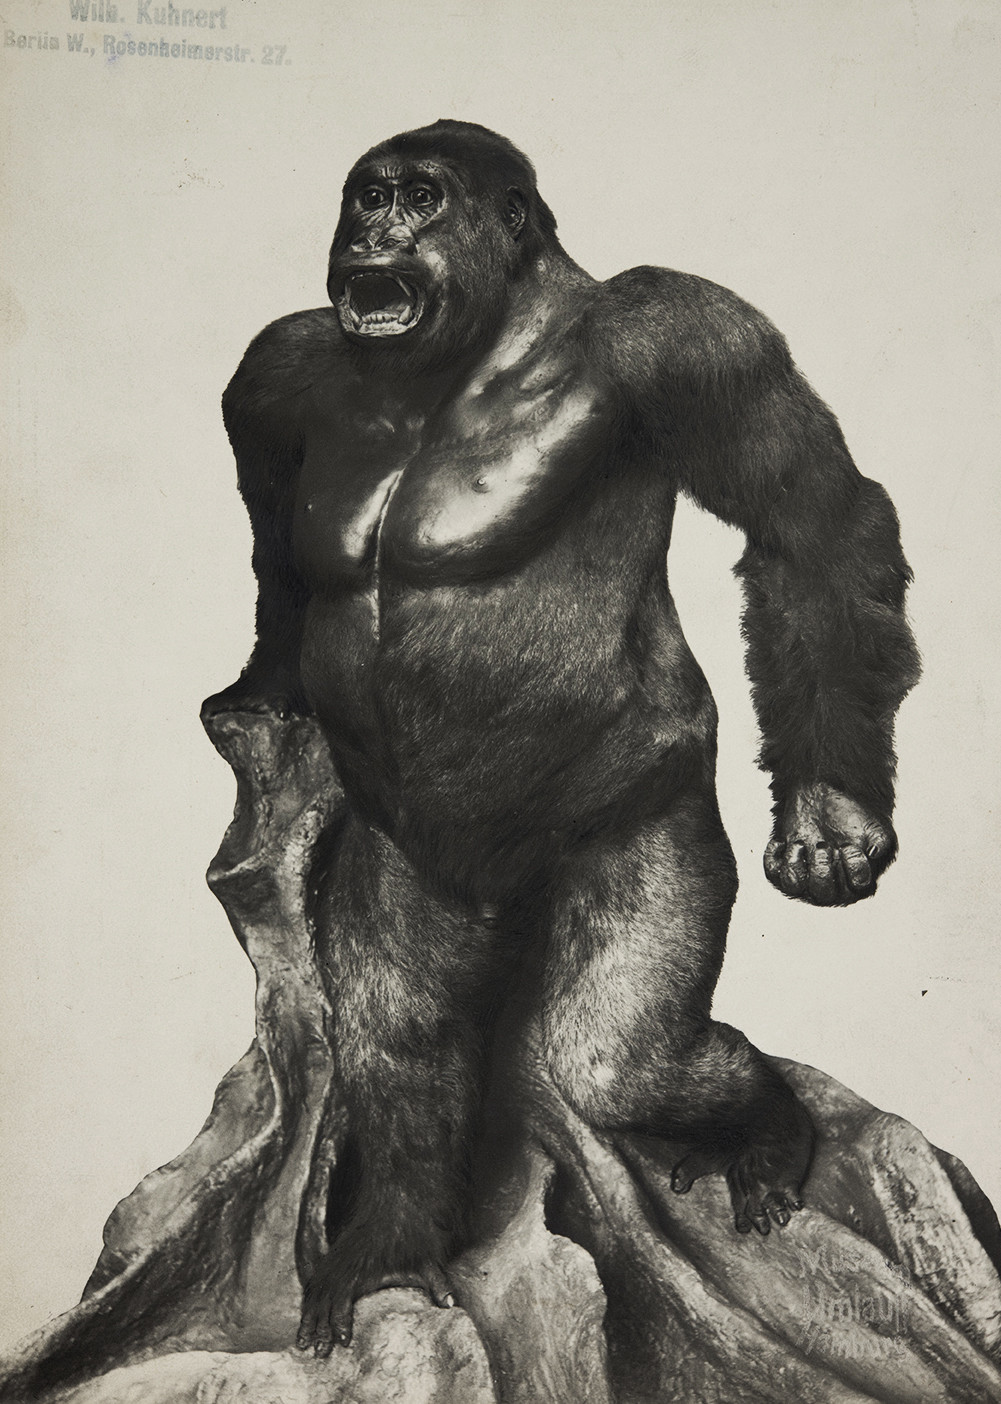 Schwarz-weiß Fotografie eines präparierten Gorillas, der auf einer künstlichen Wurzel aufgestützt, aufgerichtet auf zwei Beinen steht, das Maul zum Schrei aufgerissen hat und die linke Hand zur Faust ballt.